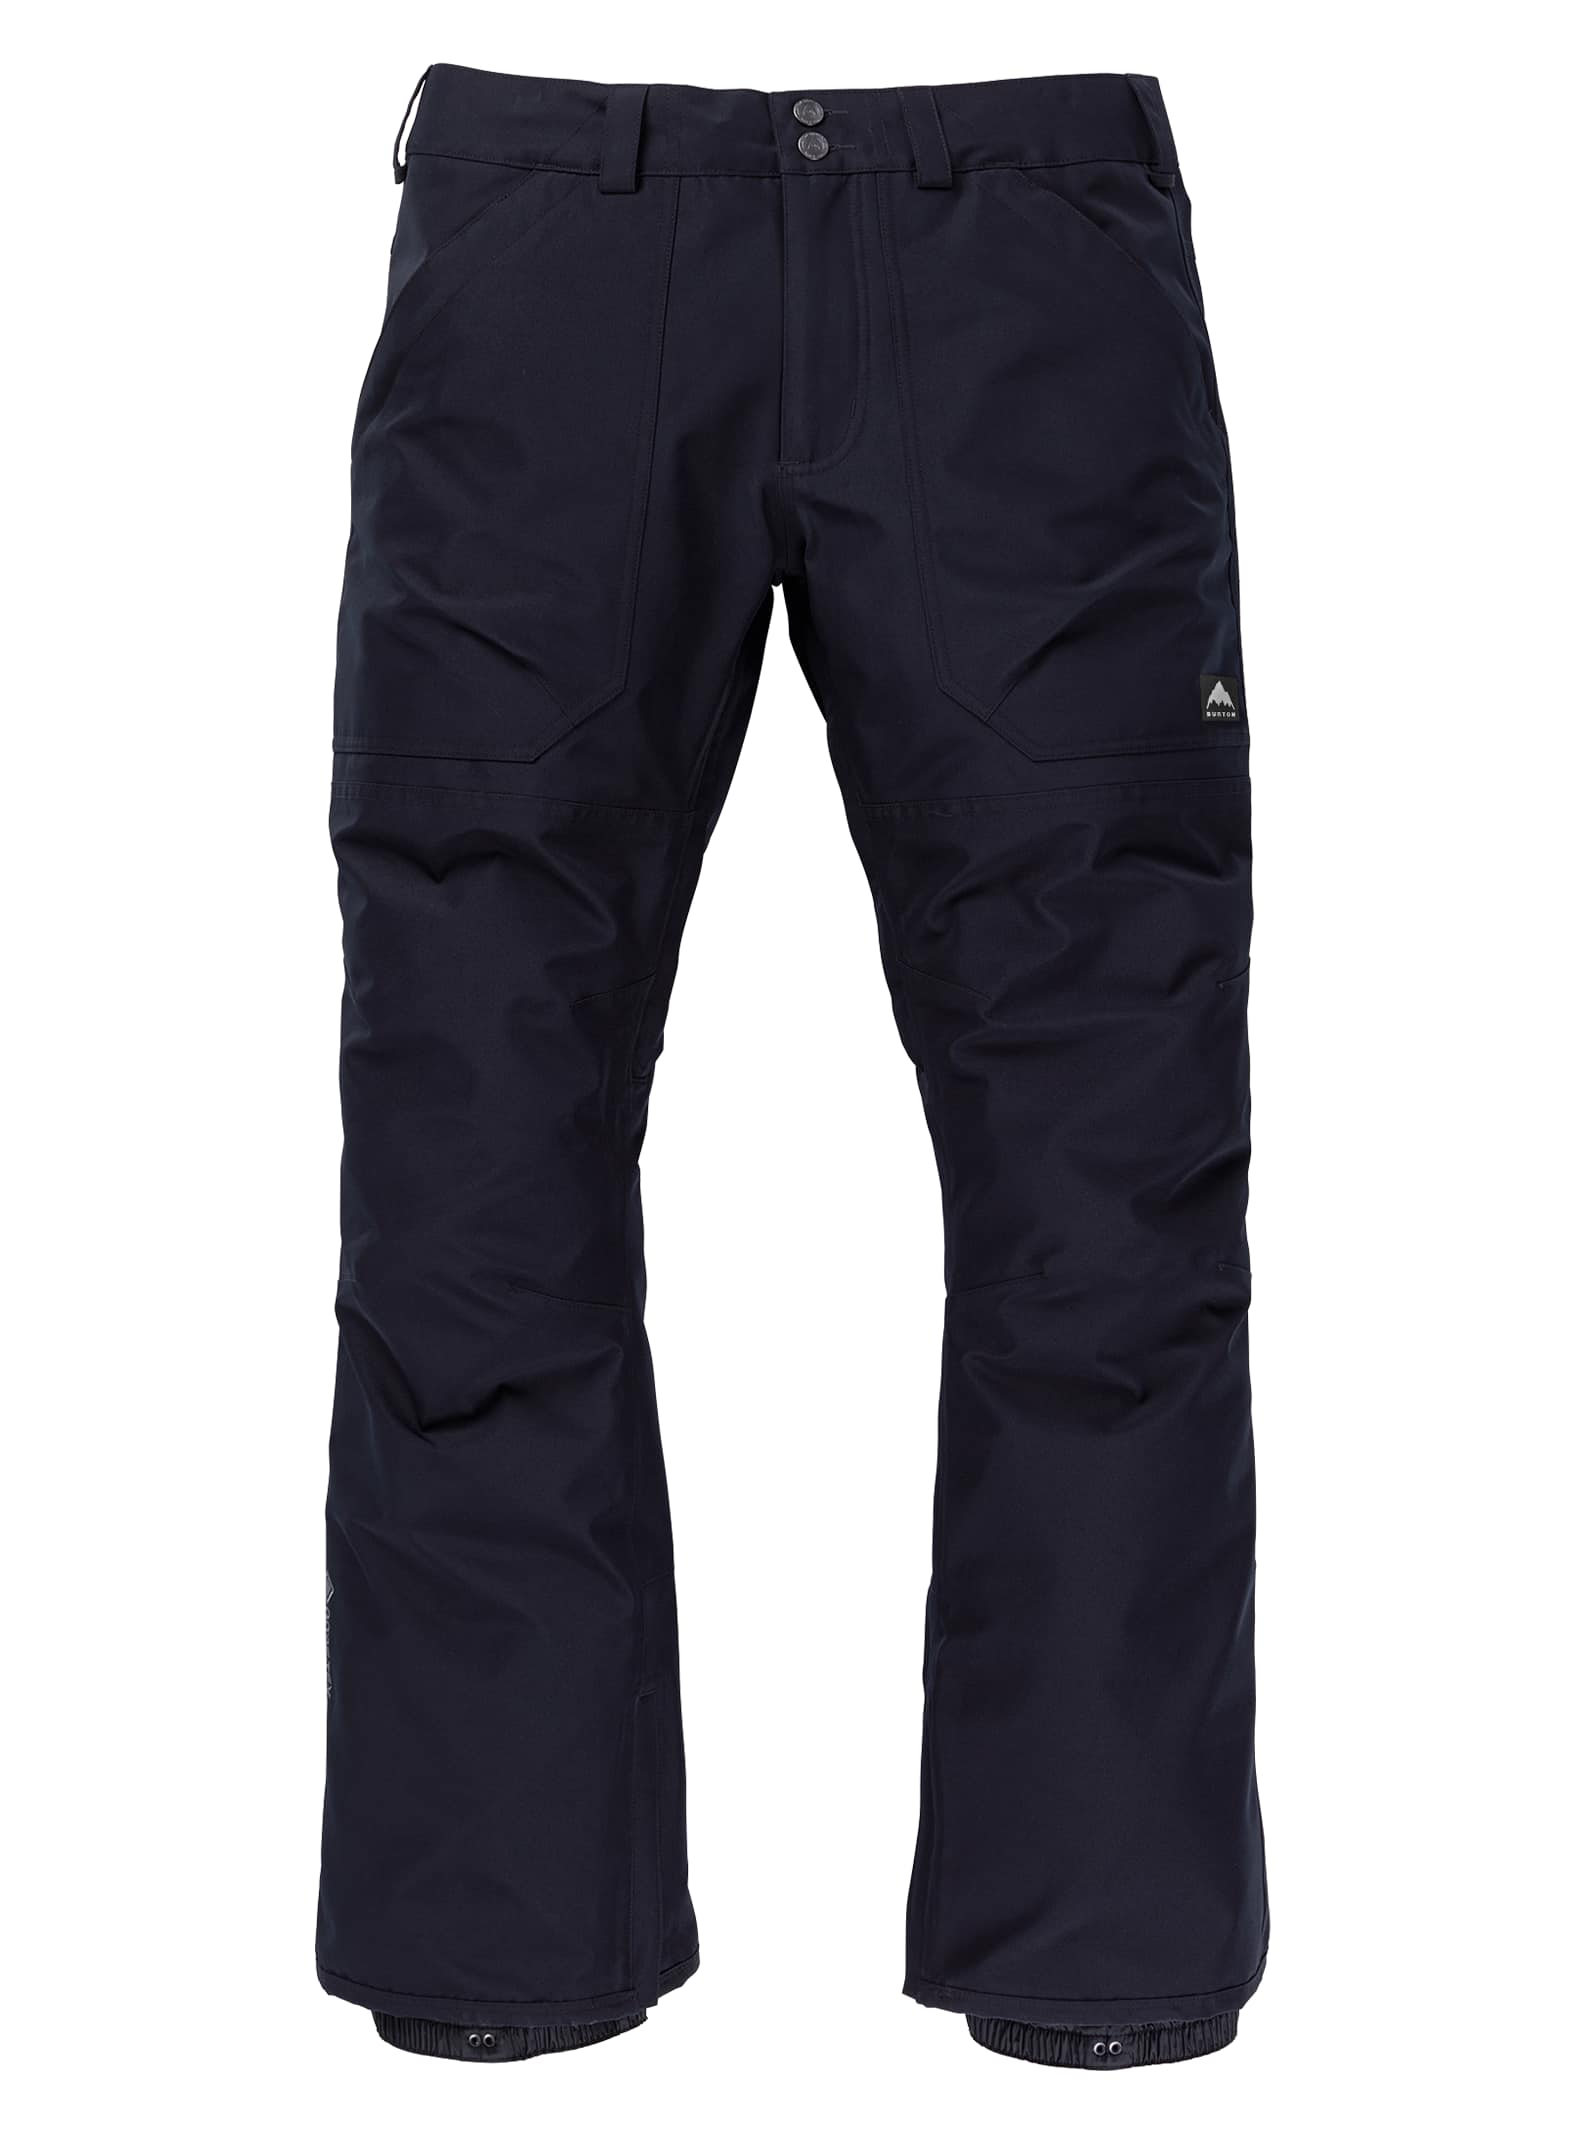 Men's Ballast GORE-TEX 2L Pants